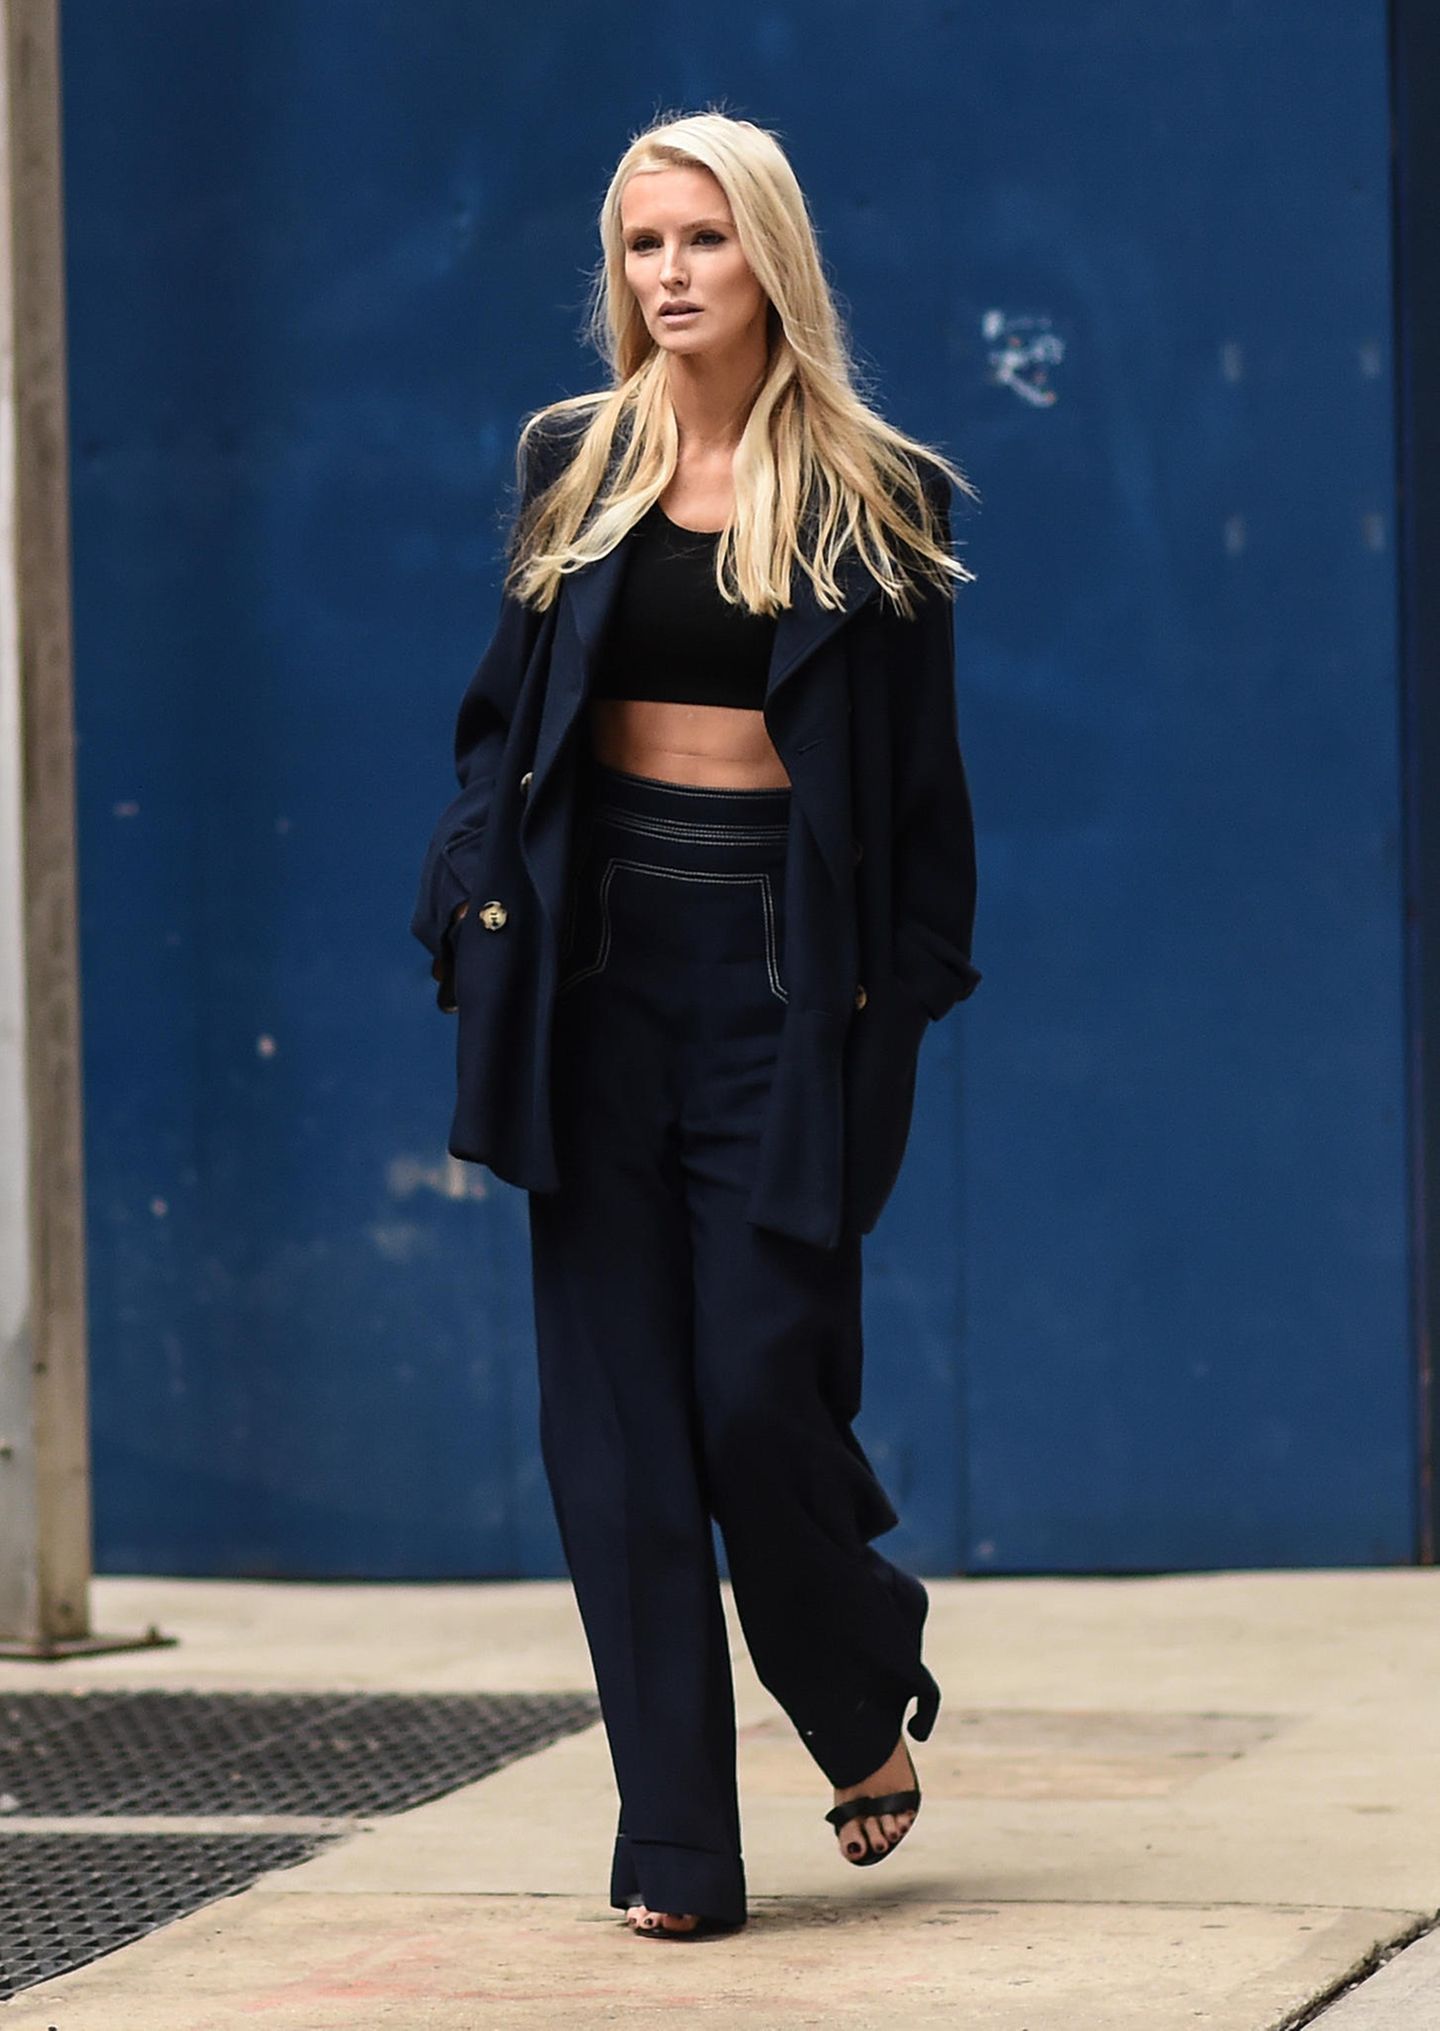 New York Fashion Week 2019: Frau mit dunkelblauem Outfit